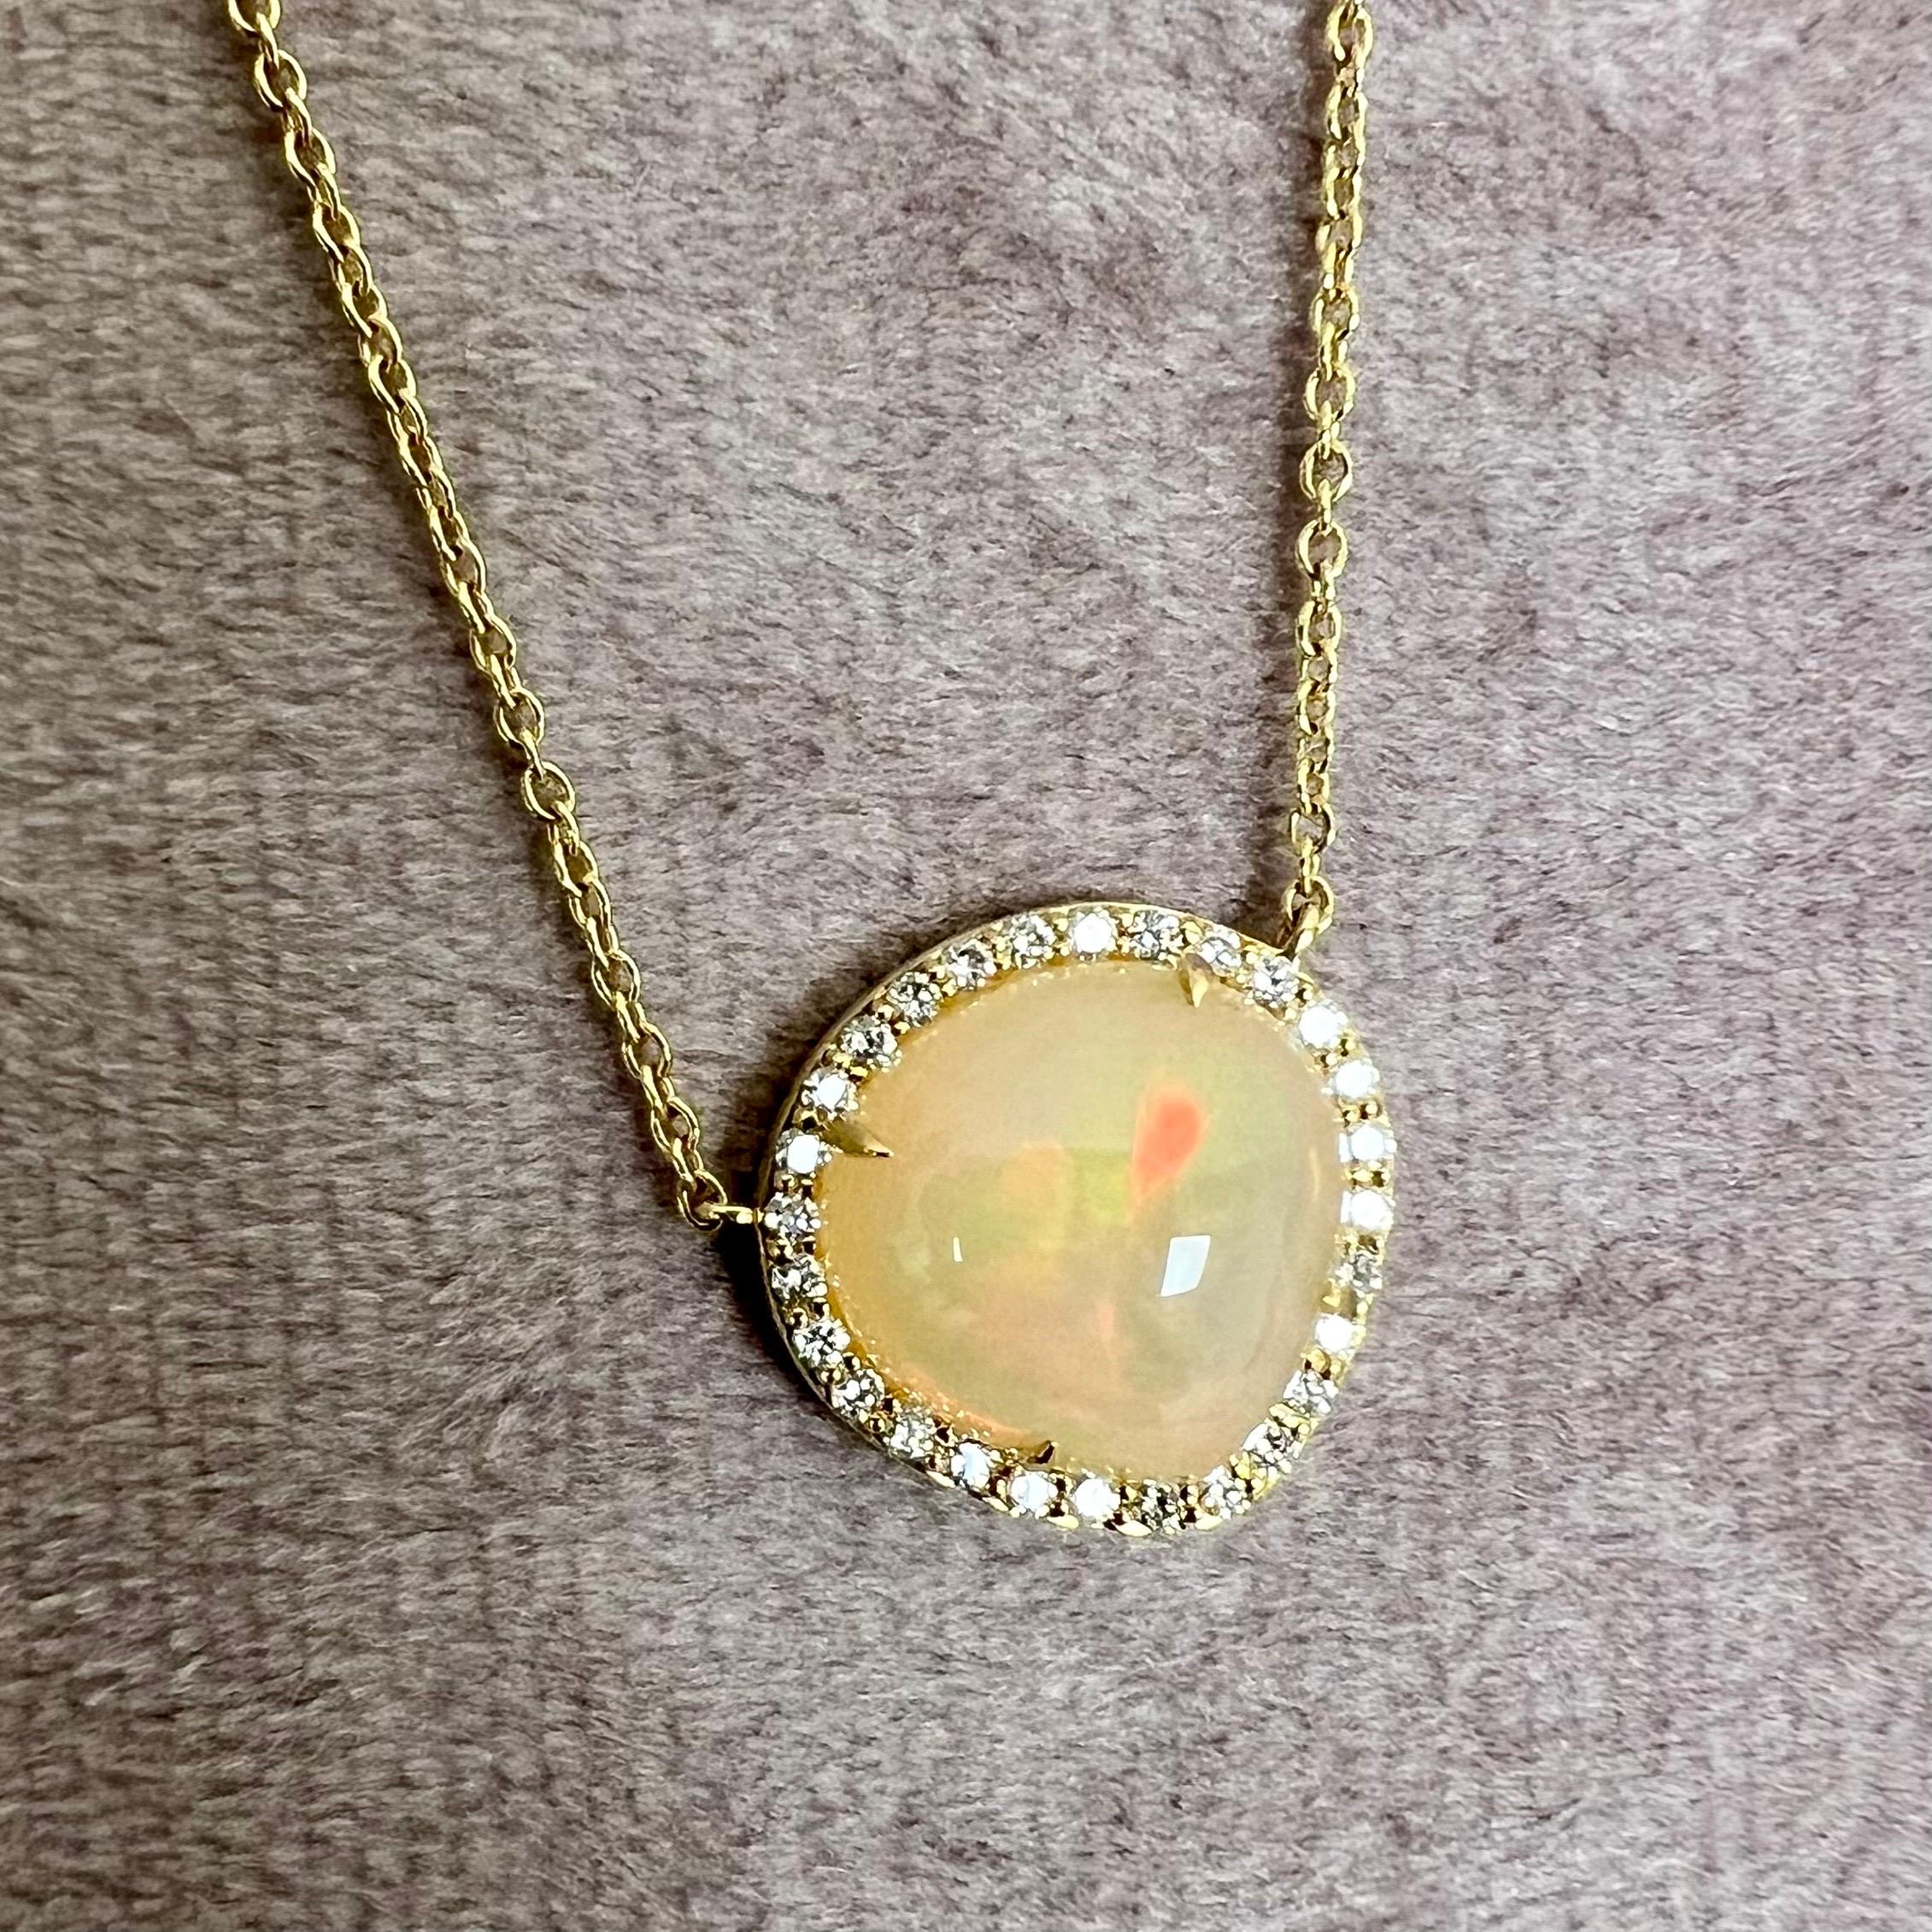 Créé en or jaune 18 carats
Opale éthiopienne 4 carats env.
Diamants 0,25 carat environ
Le collier de 18 pouces peut être porté aux 16e et 17e pouces

Exquisément façonné en or jaune 18 carats, ce collier est orné d'une magnifique opale éthiopienne